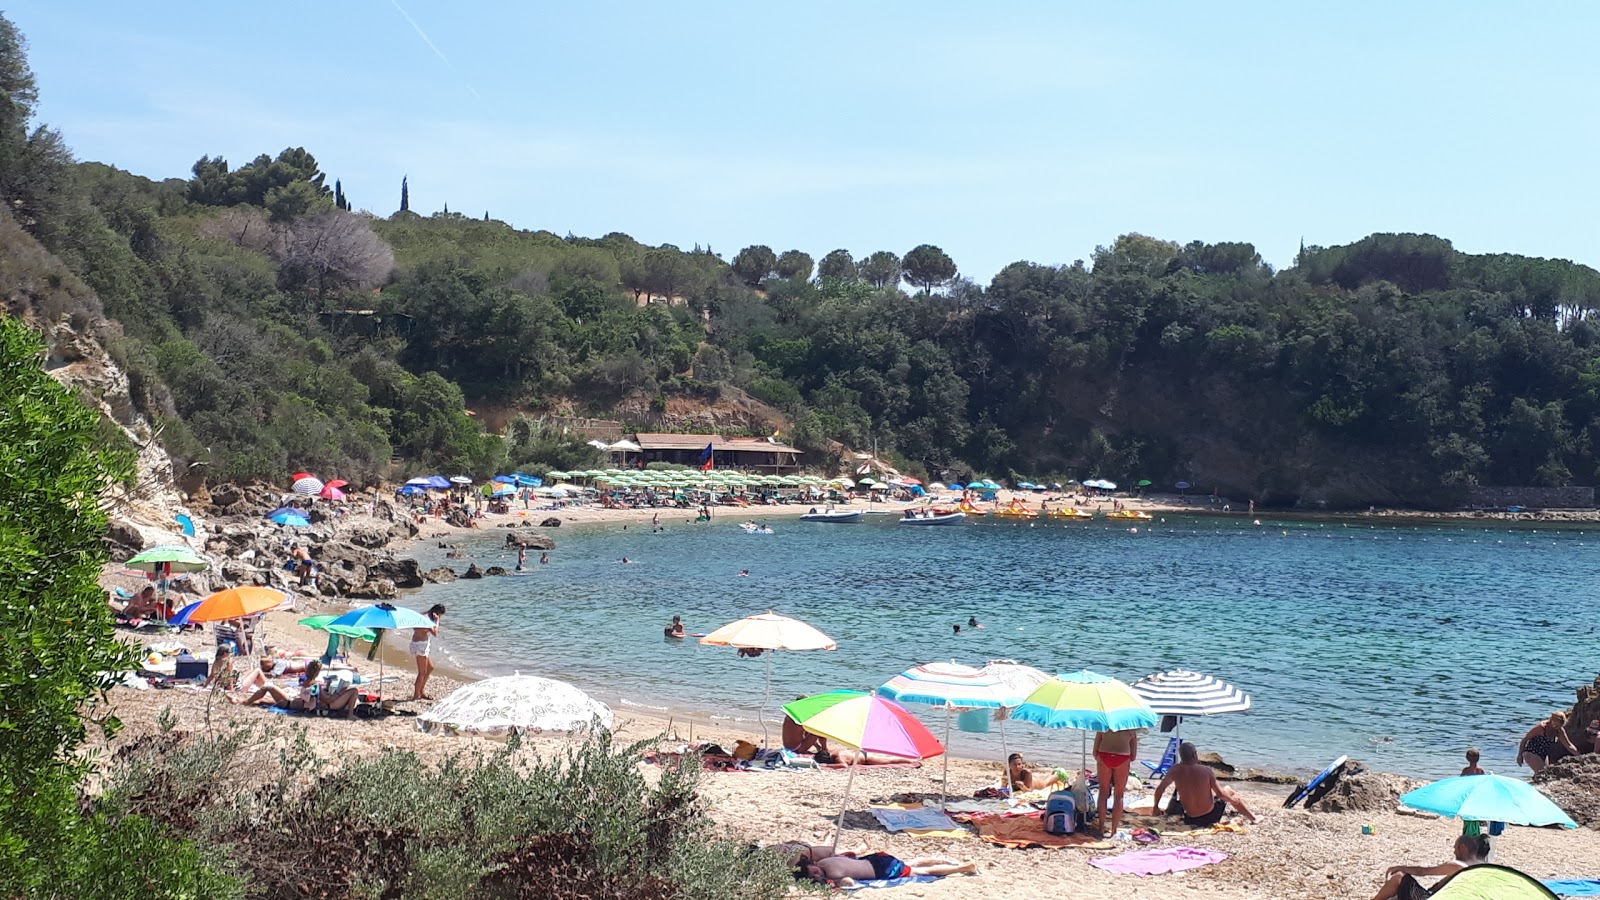 Foto de Spiaggia Di Zuccale ubicado en área natural